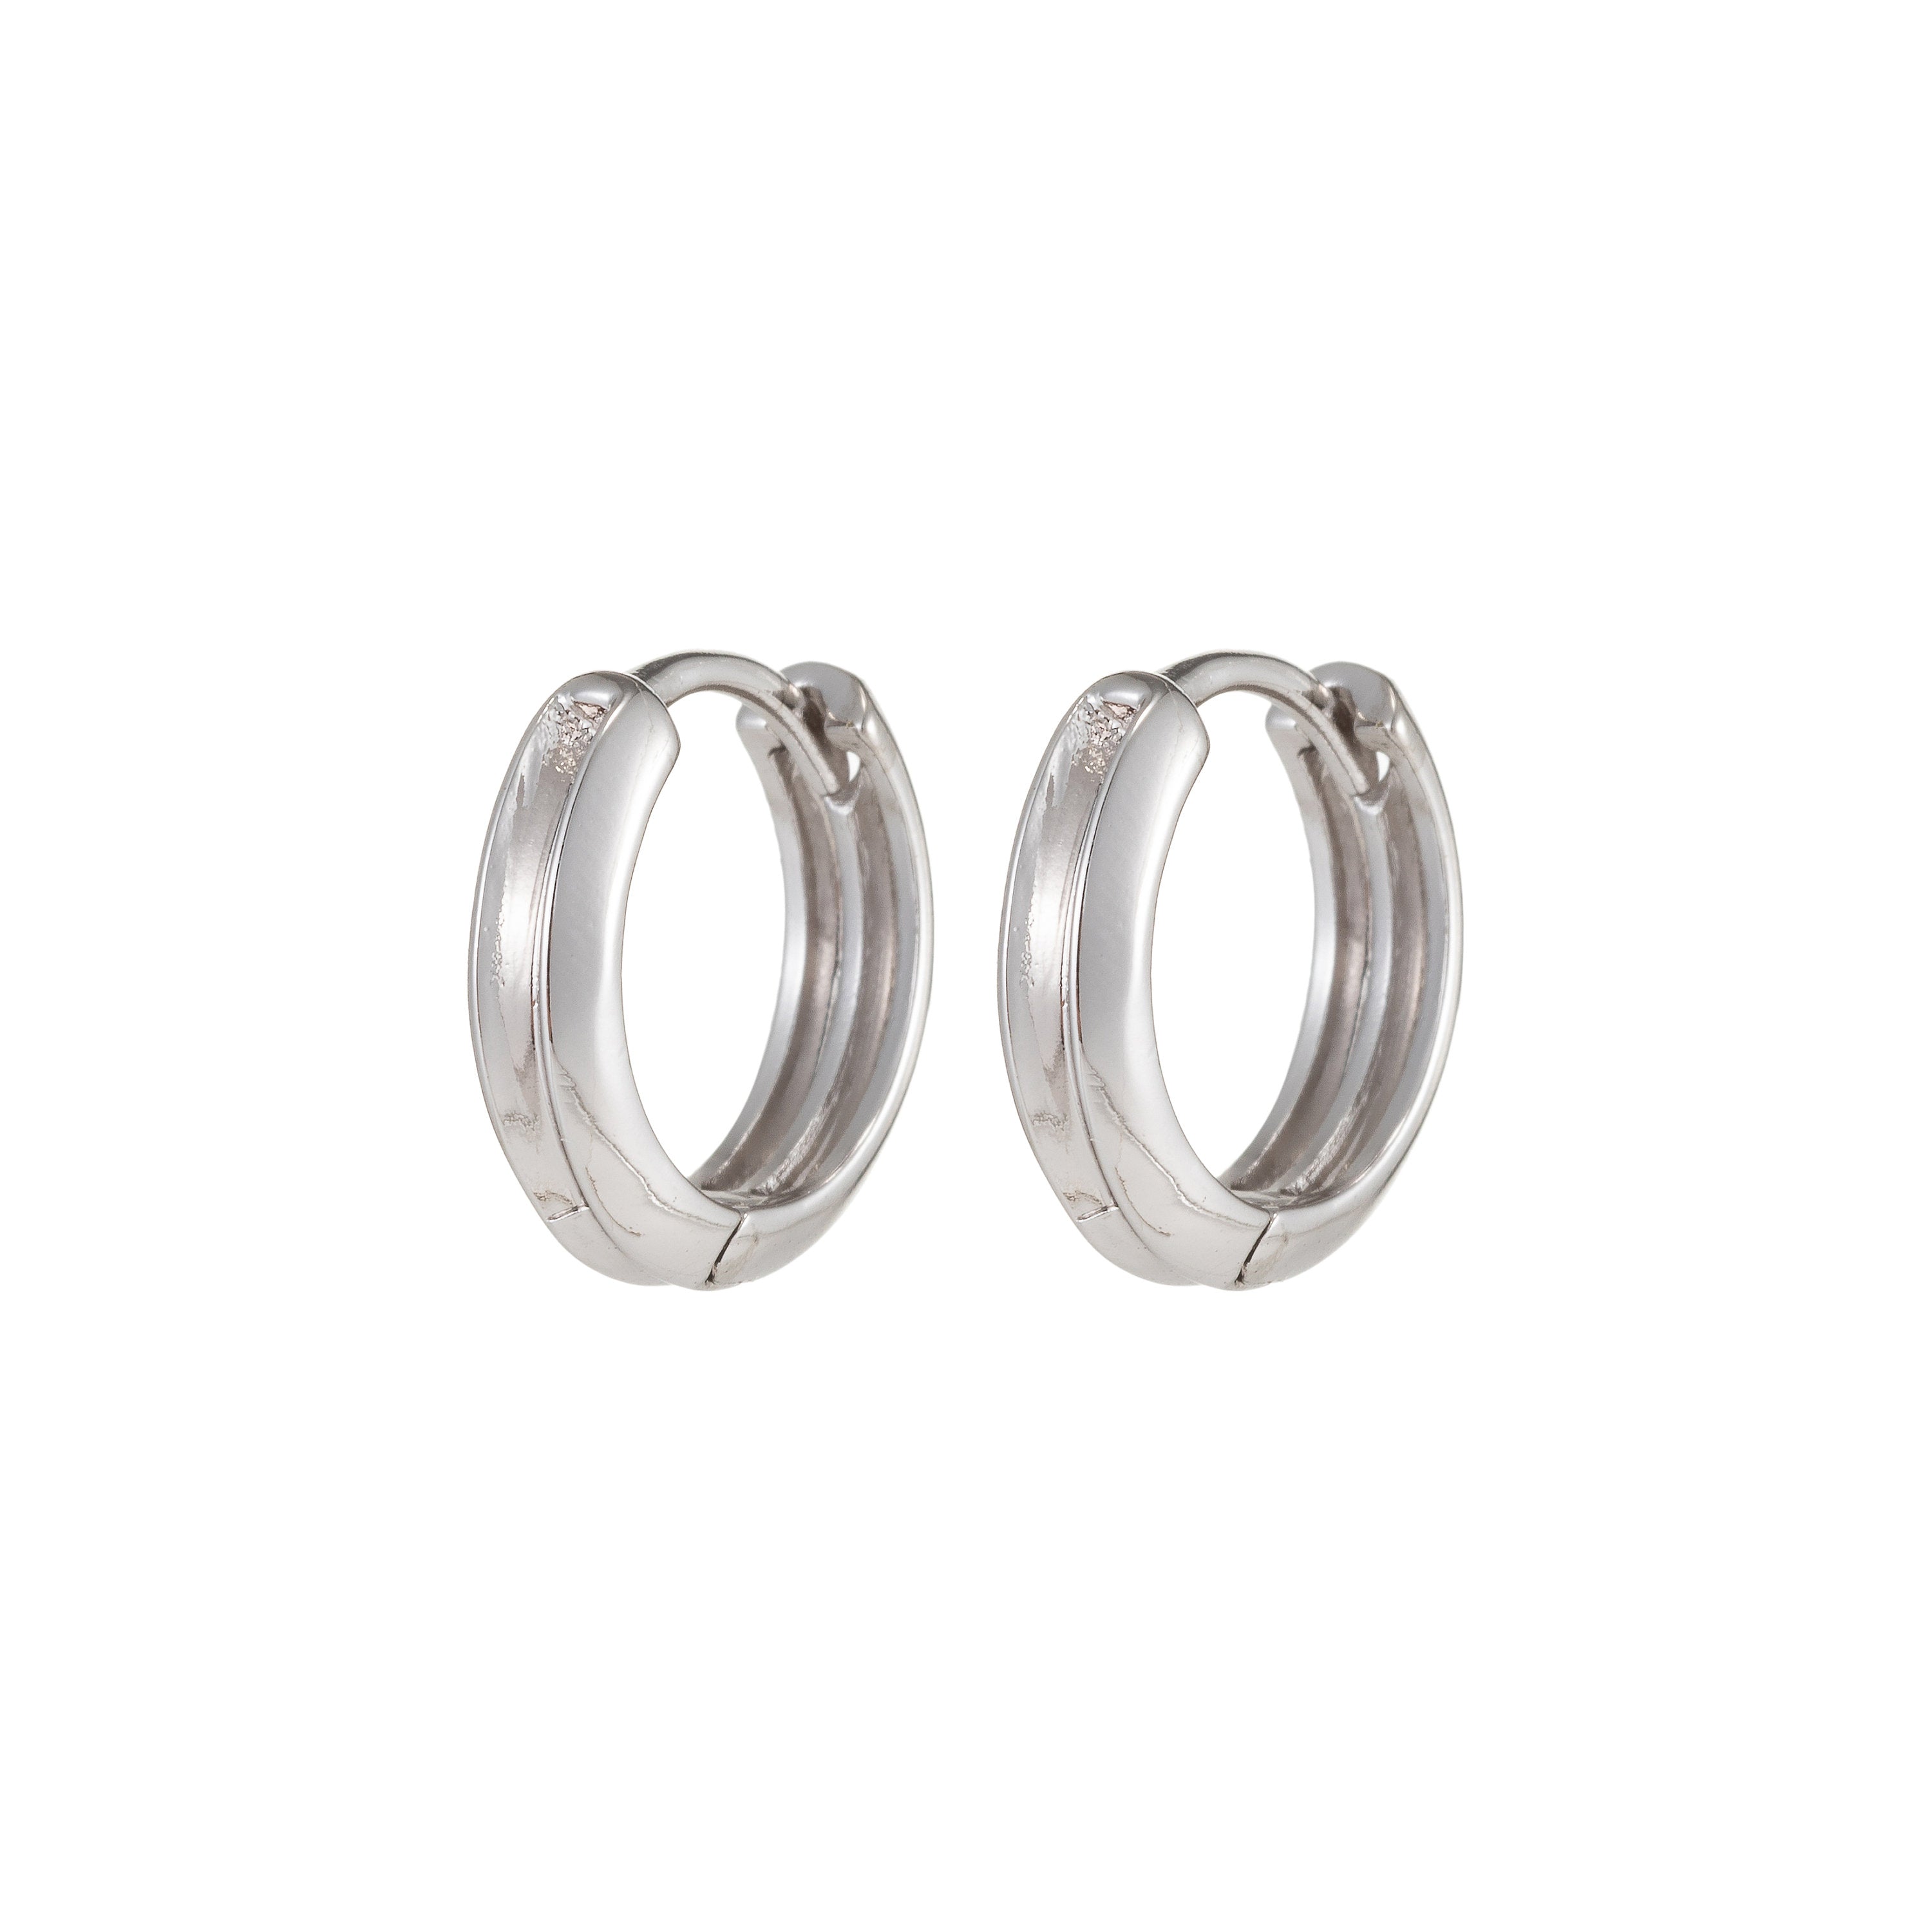 Small Silver Hoop Earrings, Silver Huggie Earrings, Simple Hoop Earrings 15mm - DLUXCA